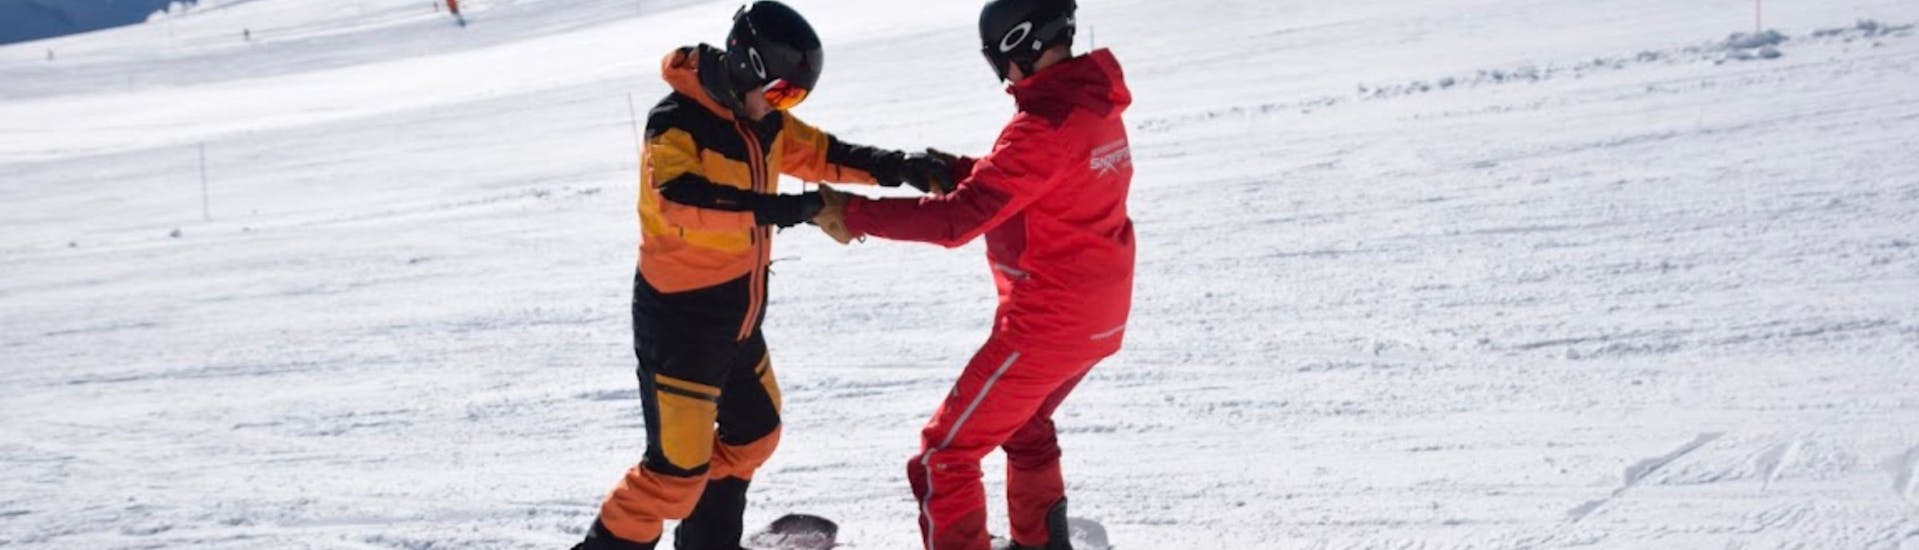 Snowboardles voor Kinderen & Volwassenen (vanaf 8j.) - First Timer met Skischool Snowsports Mayrhofen.